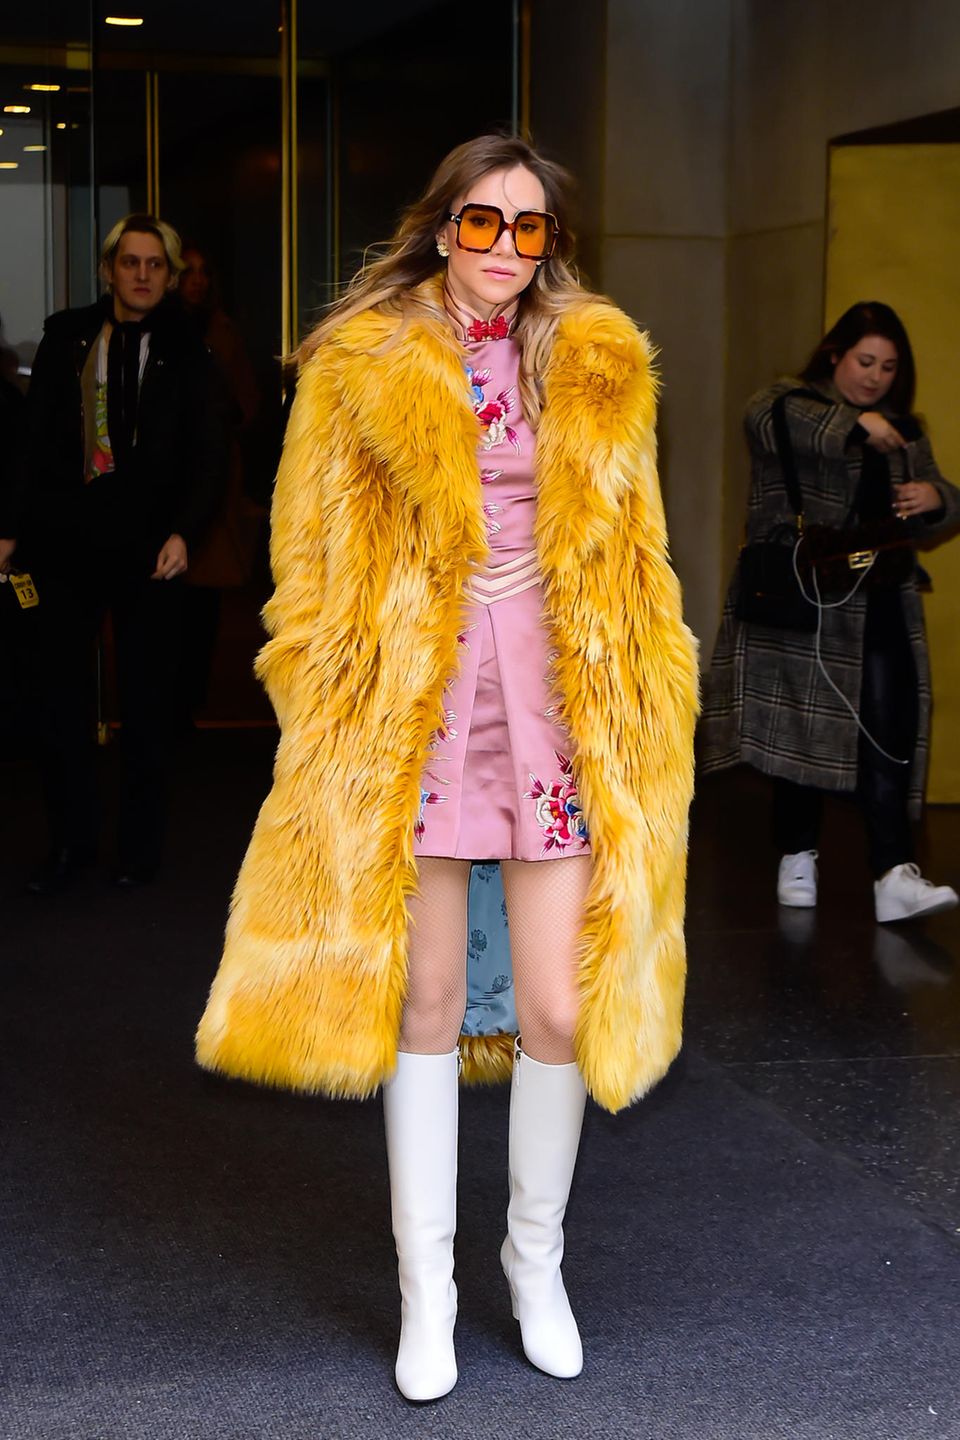 Auch in ihrem zweiten Look sieht Suki aus, als wäre sie direkt vom Laufsteg zu den Aufzeichnungen der "Today Show" in New York gekommen. Im rosa Minikleid und mit weißen Stiefeln und Retrosonnenbrille landet sie einen modischen Volltreffer. Auch hier gibt es einen klaren Hingucker: der voluminöse Fake-Fur-Mantel im 70's-Style.